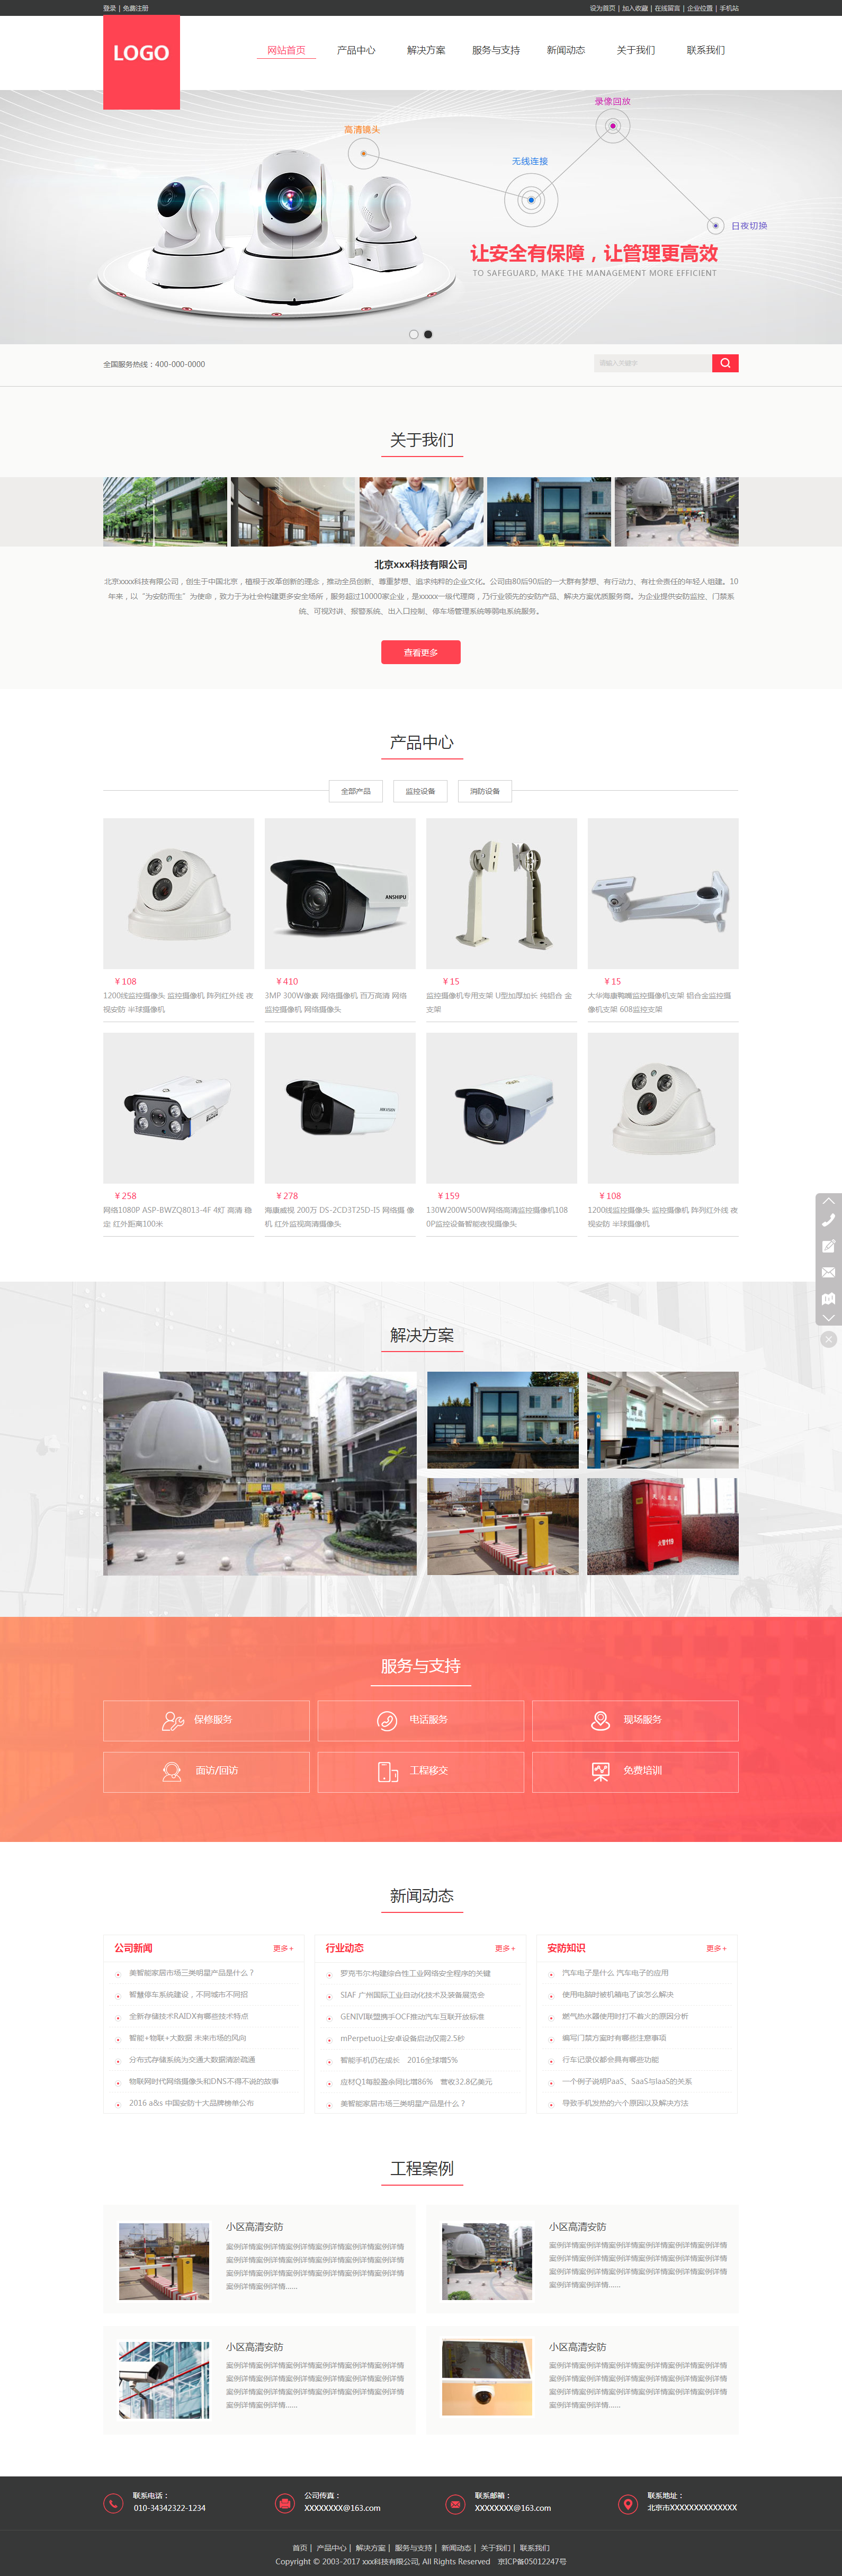 东莞市智能监控有限公司网站设计